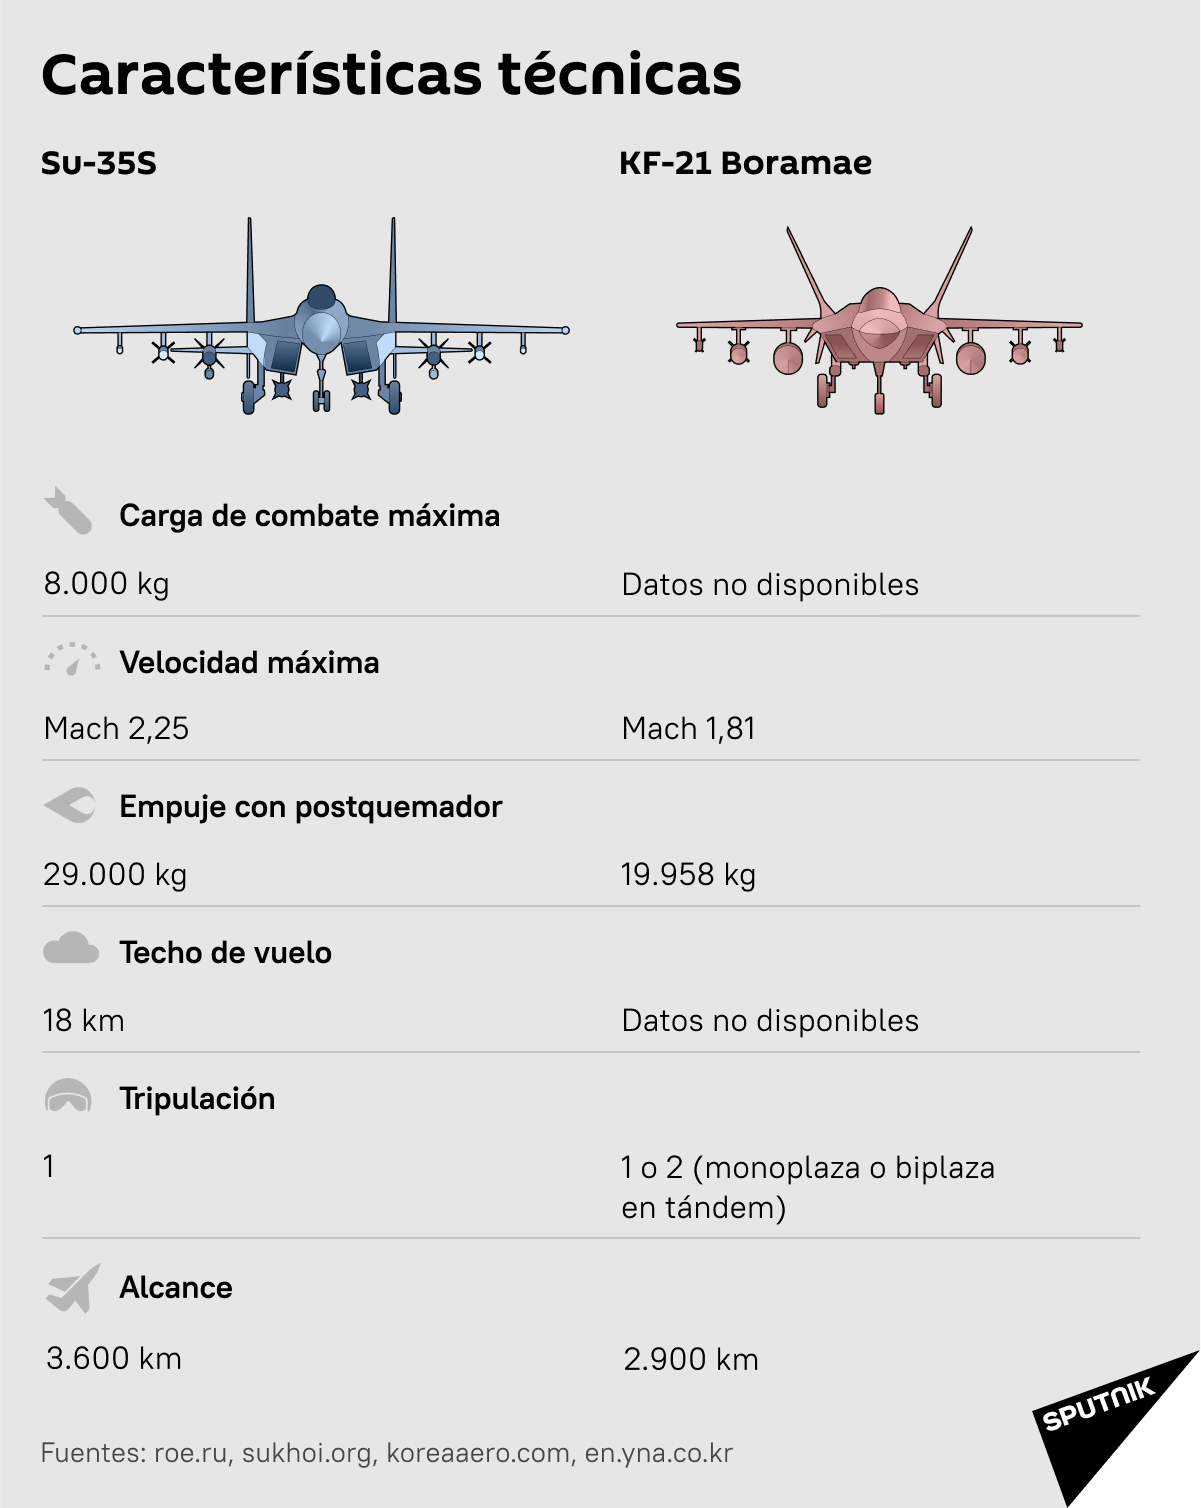 Comparativa del Su-35S y el KF-21 Boramae - Sputnik Mundo